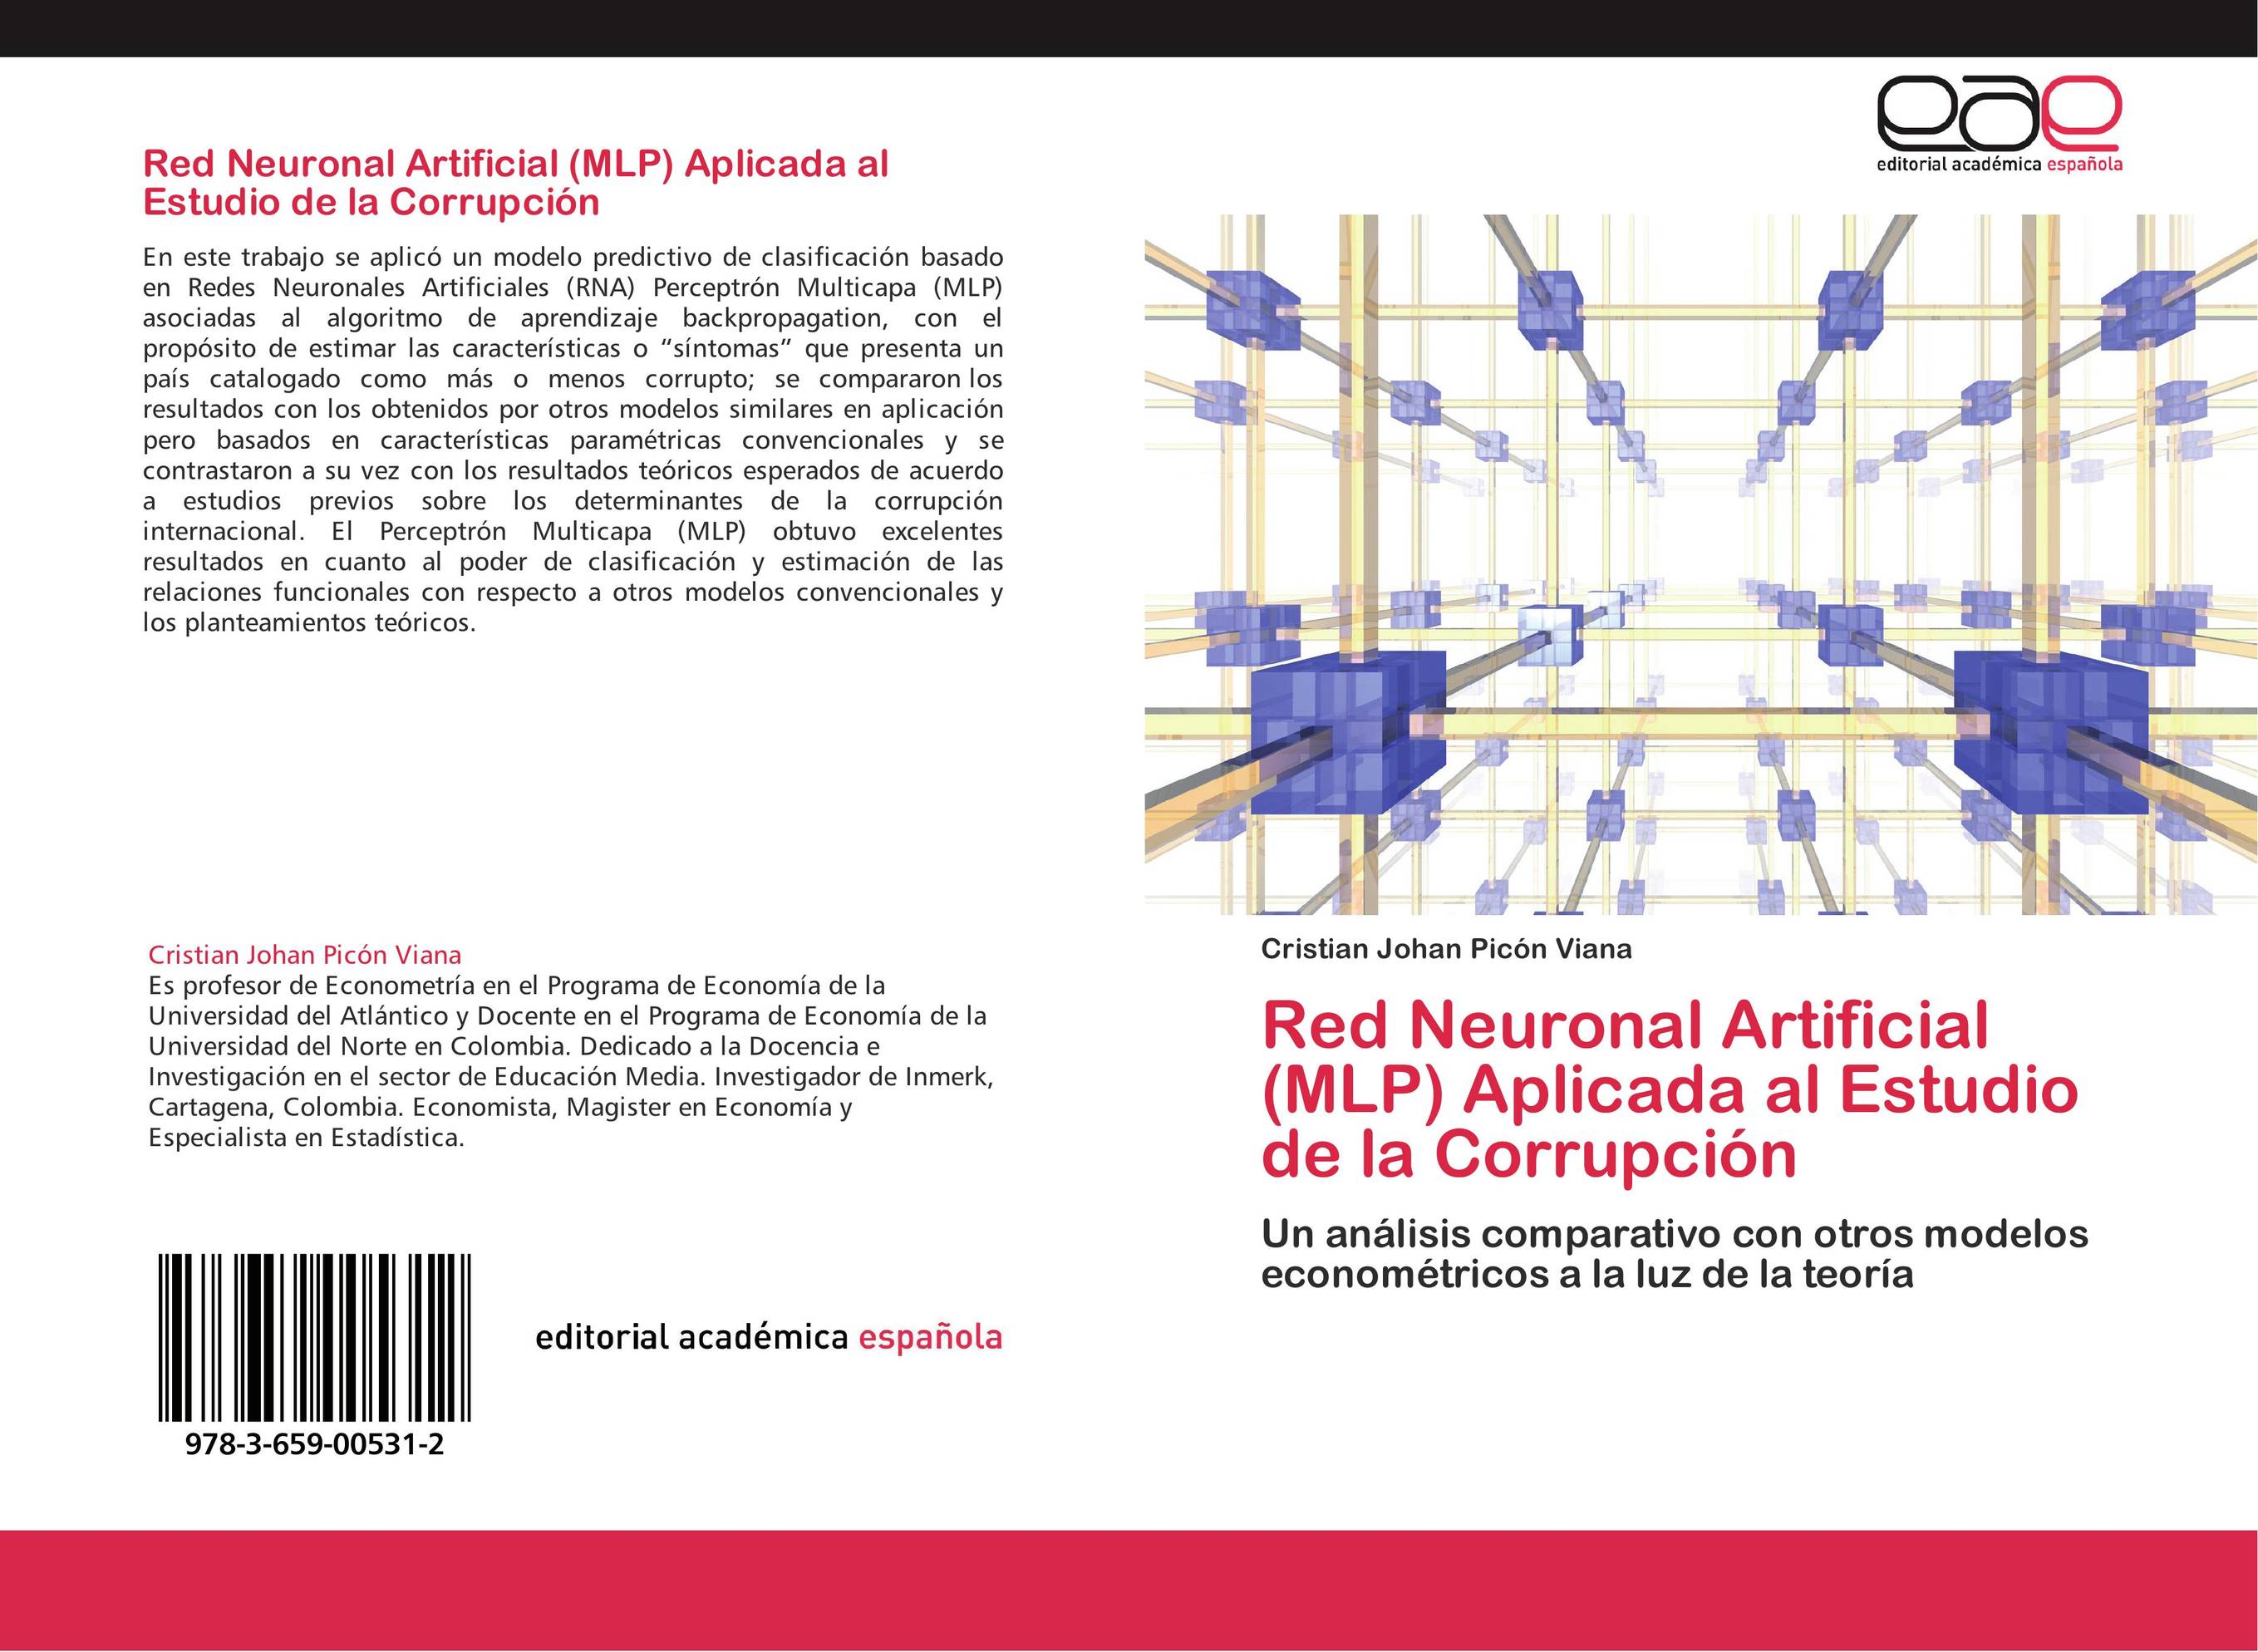 Red Neuronal Artificial (MLP) Aplicada al Estudio de la Corrupción